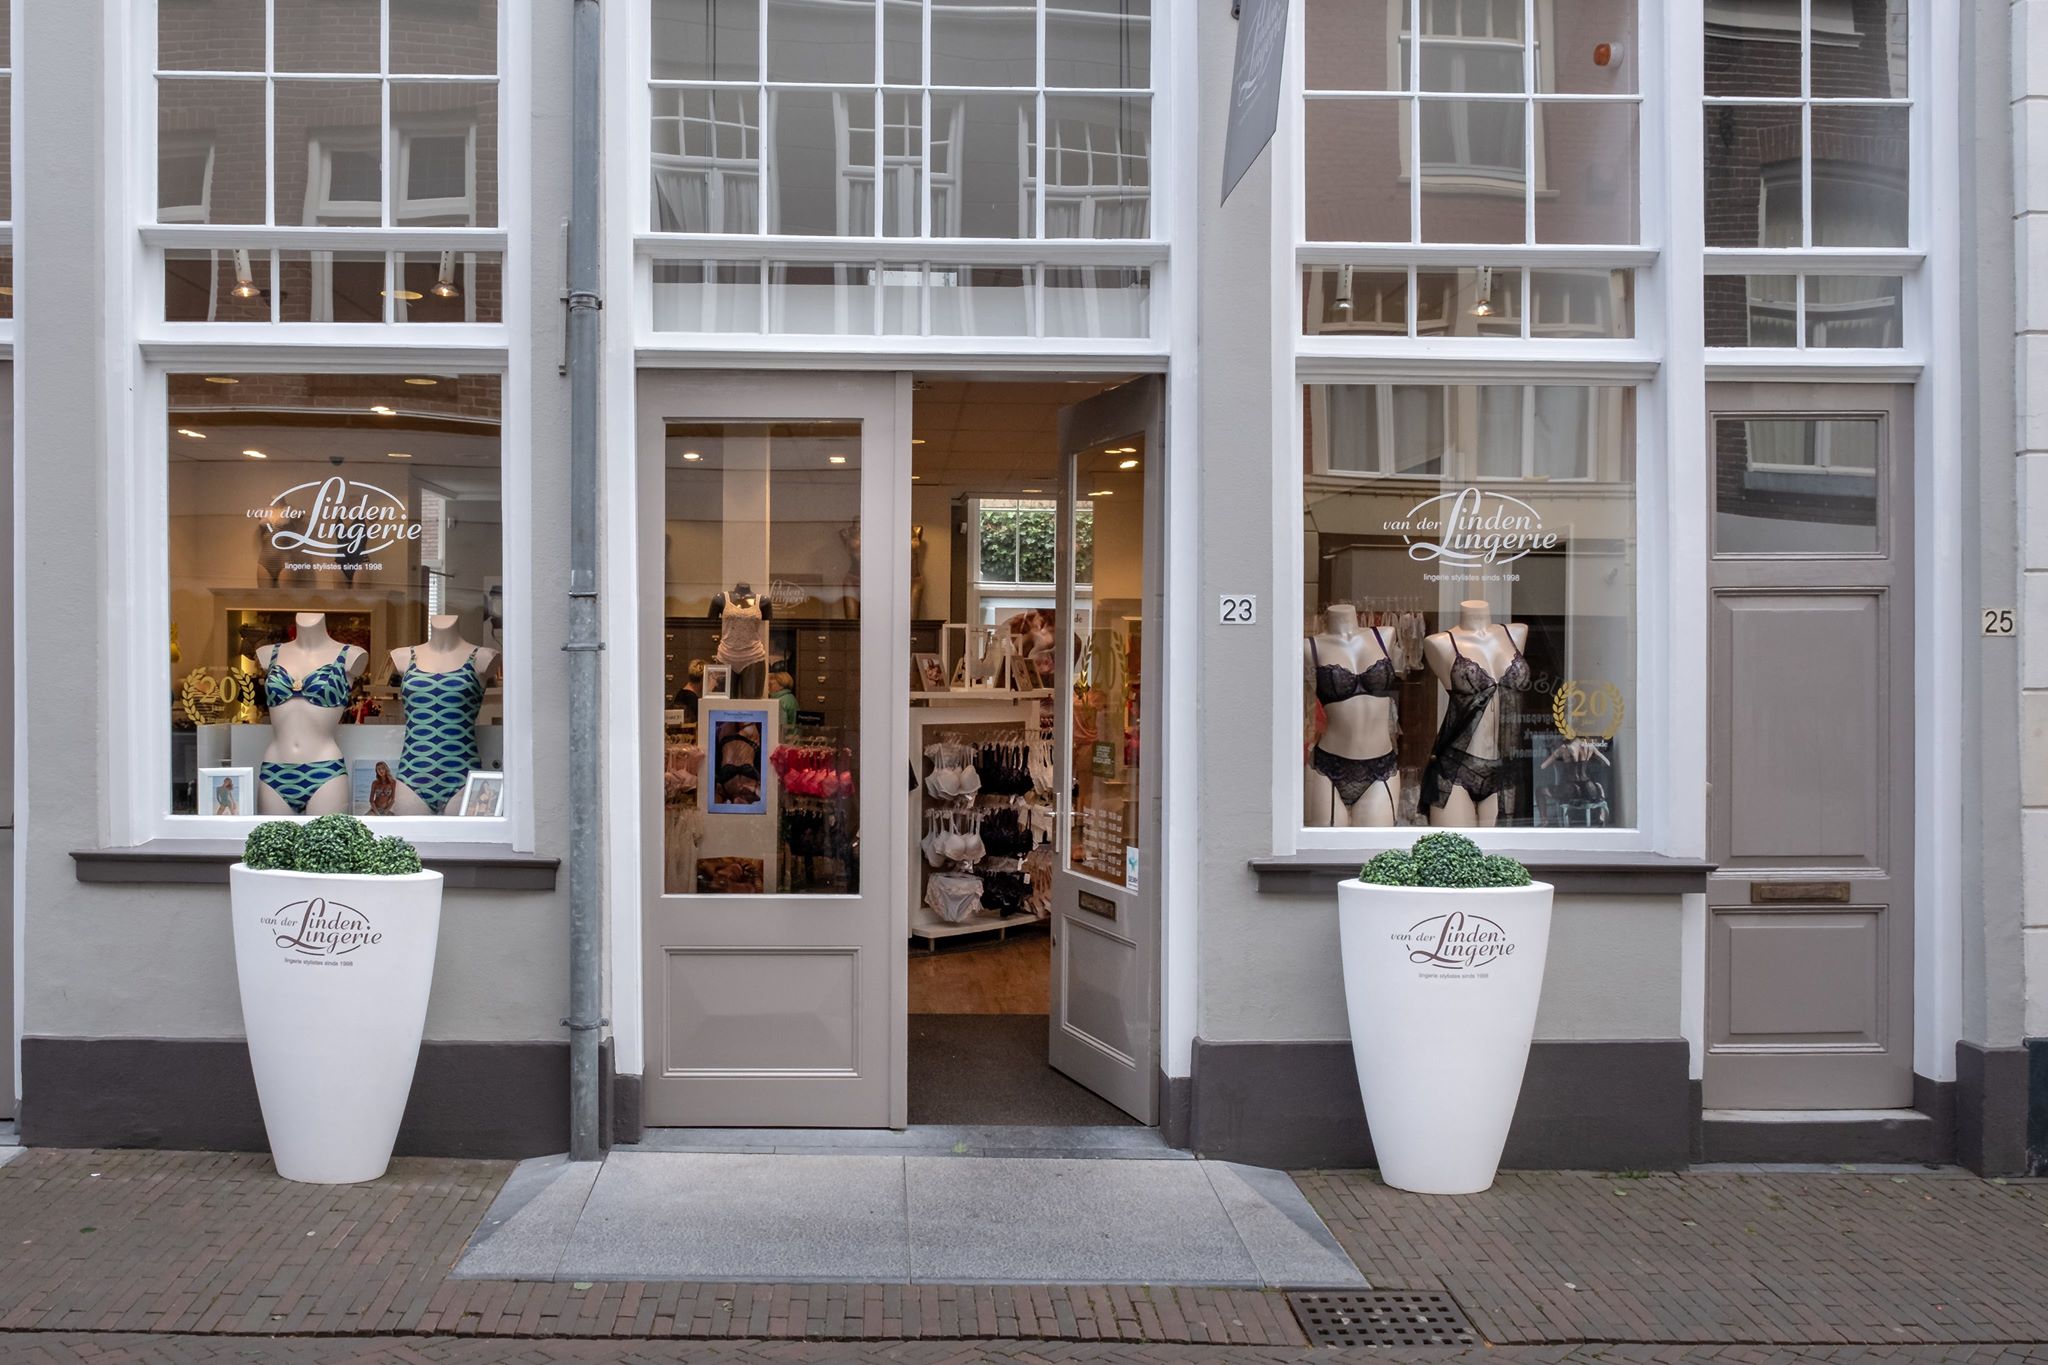 Van der Linden en meer winkels in Deventer vind je bij Shoppen in Deventer